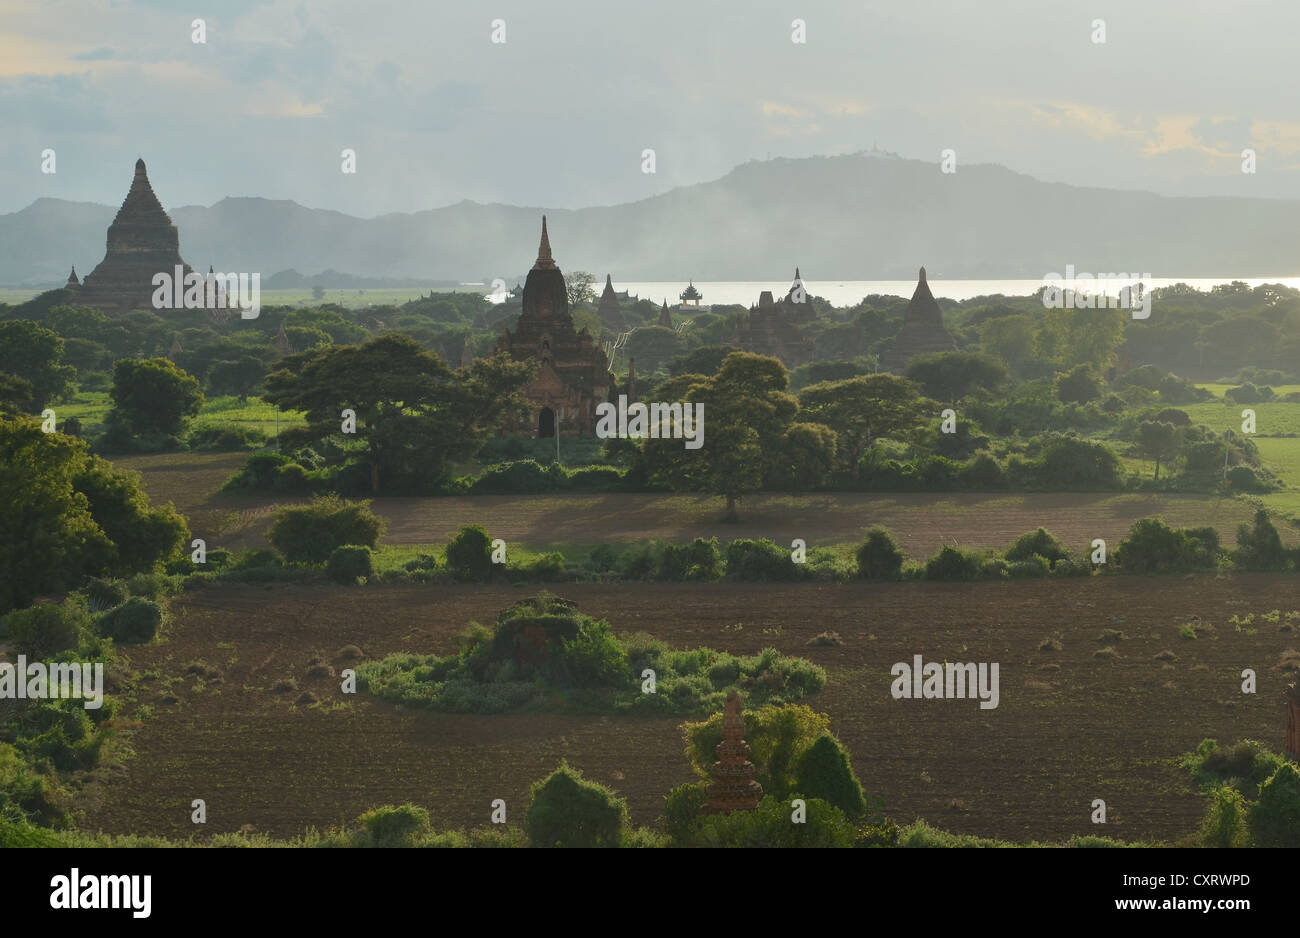 Fumo, nebbia nella luce della sera tra i campi, templi e pagode, Tempio di Ananda e Thatbyinnyu Temple, Bagan, Myanmar Foto Stock